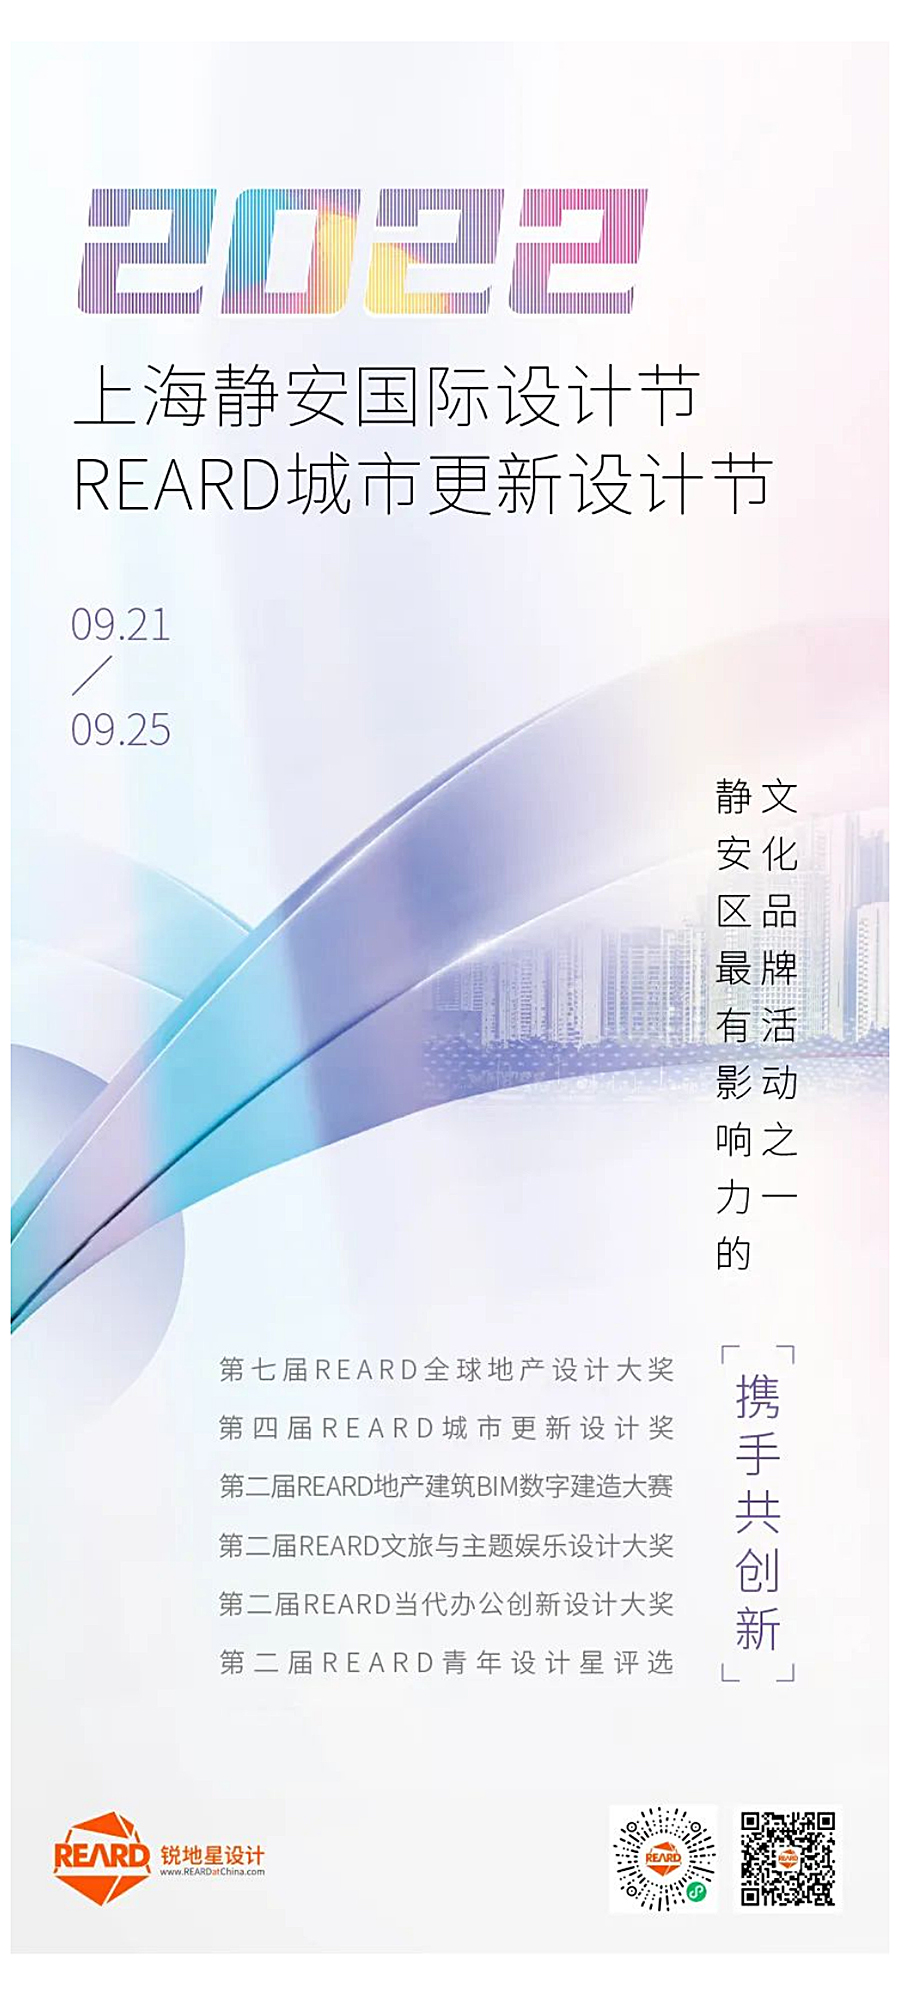 瞰见艺术的力量：上海静安国际设计节｜REARD城市更新设计节来袭_0000_图层-1.jpg